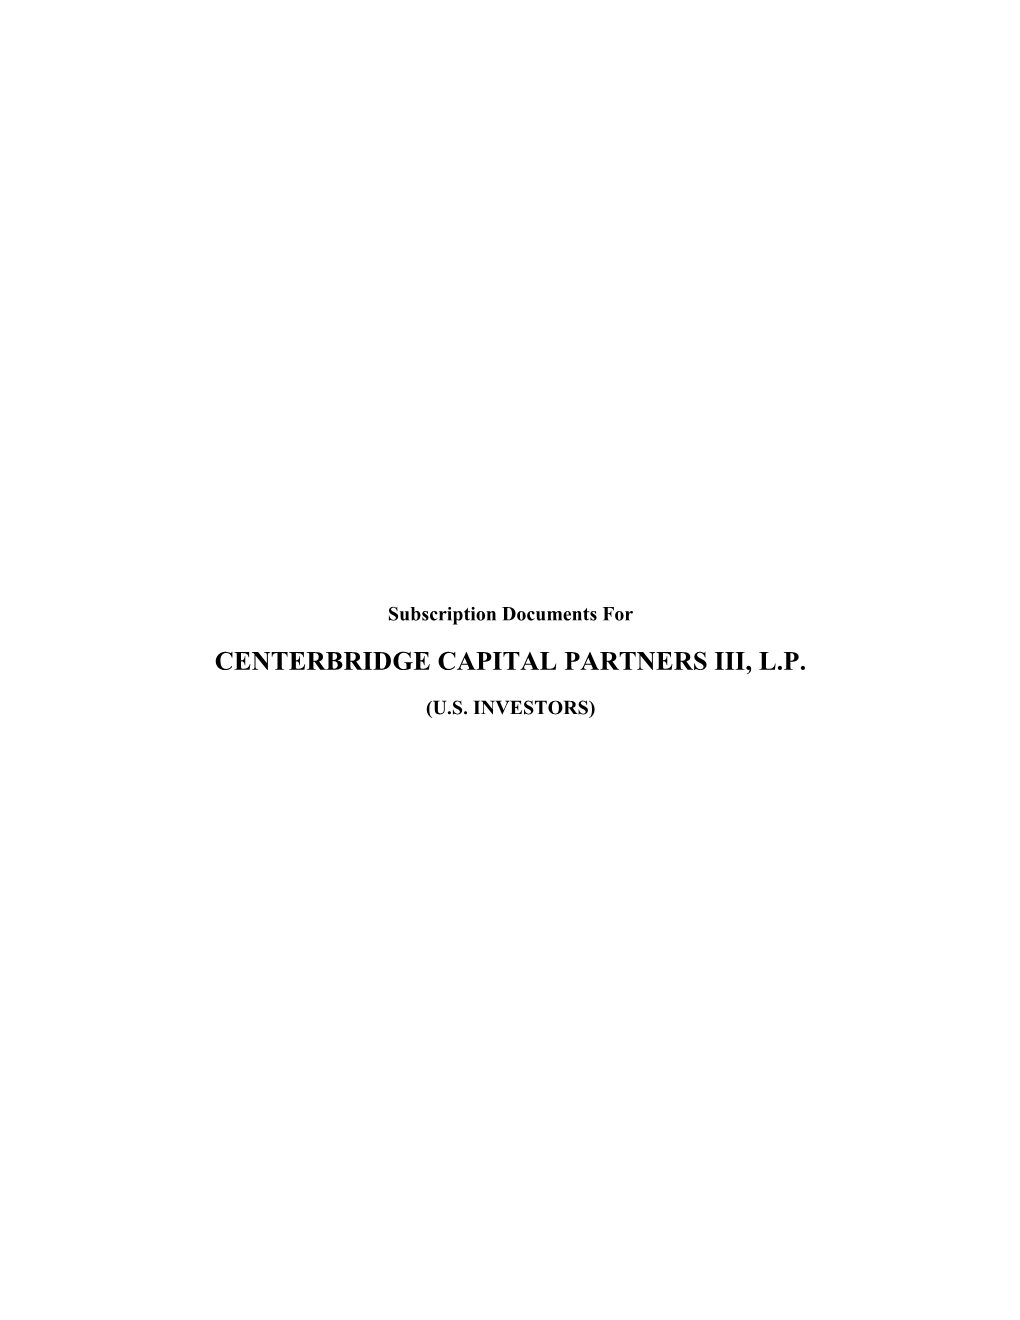 Centerbridge Capital Partners Iii, L.P